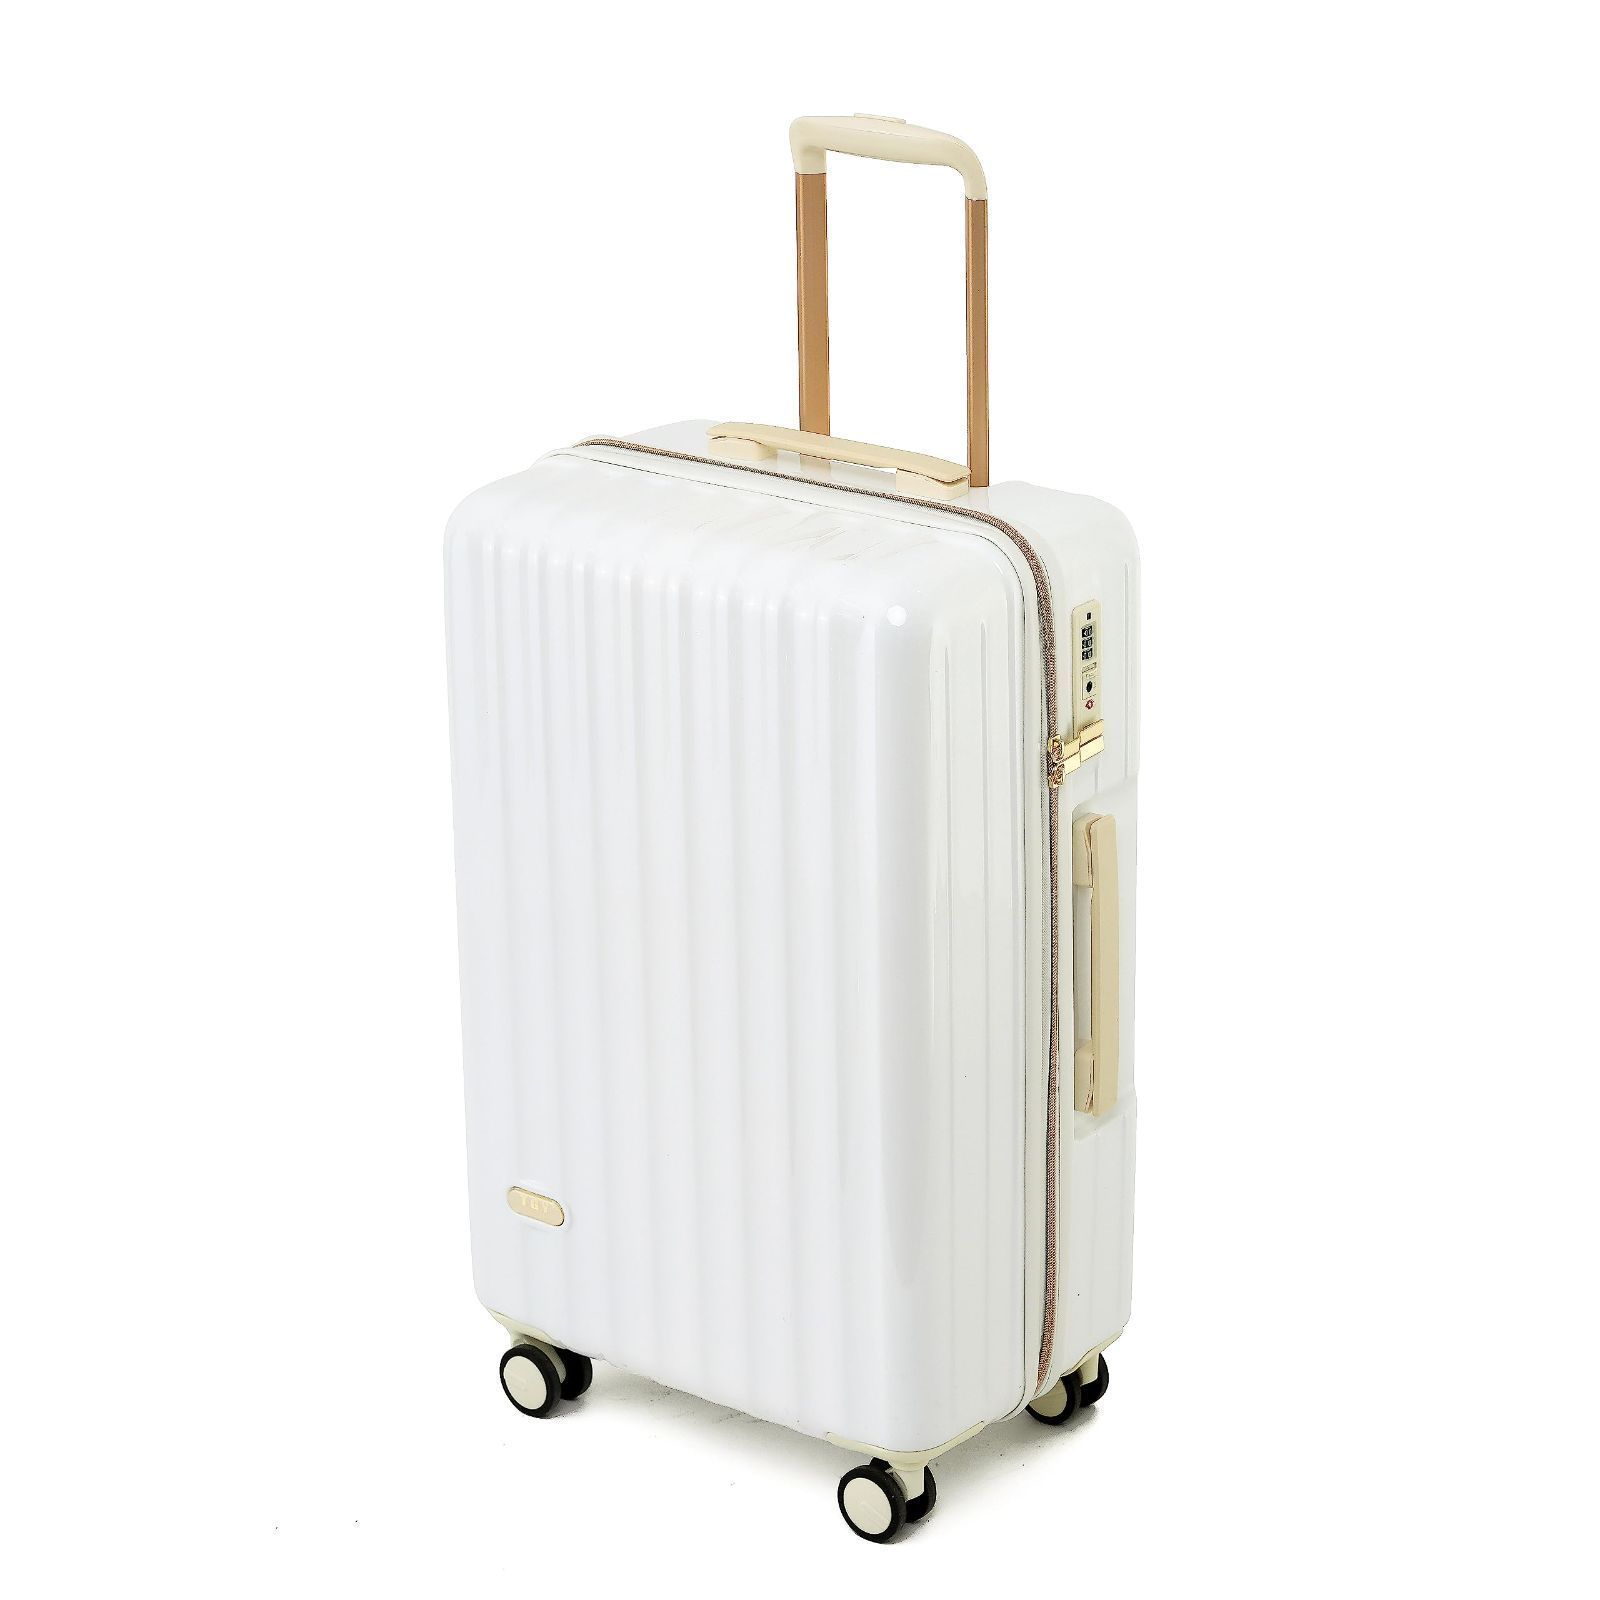 スーツケース mサイズ 35泊以上 軽量 かわいい キャリーケース ...